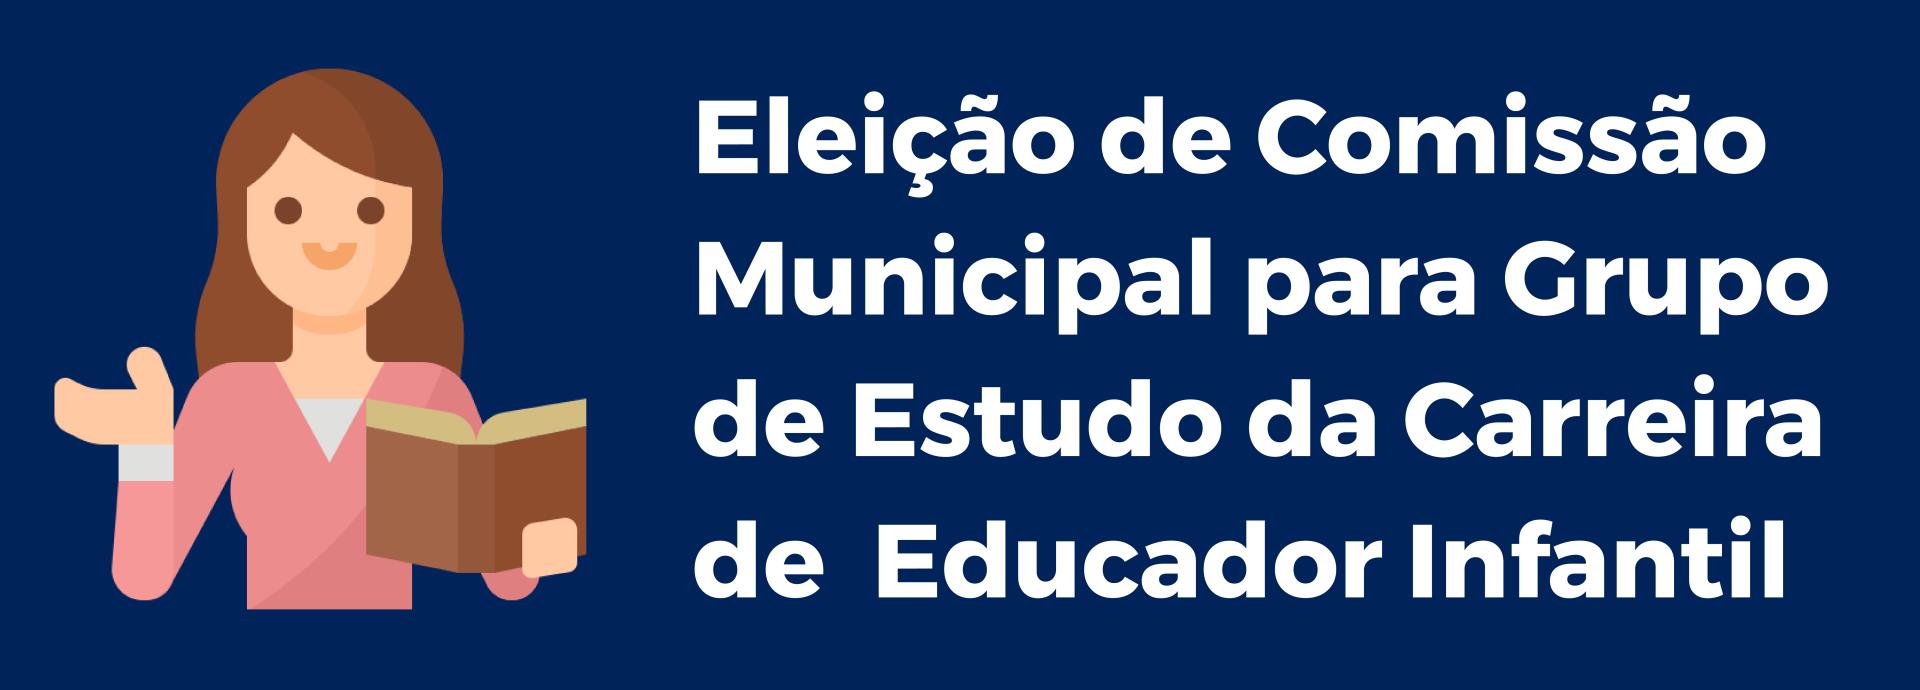 Eleição de Comissão Municipal para Grupo de Estudo da  Carreira de  Educador Infantil